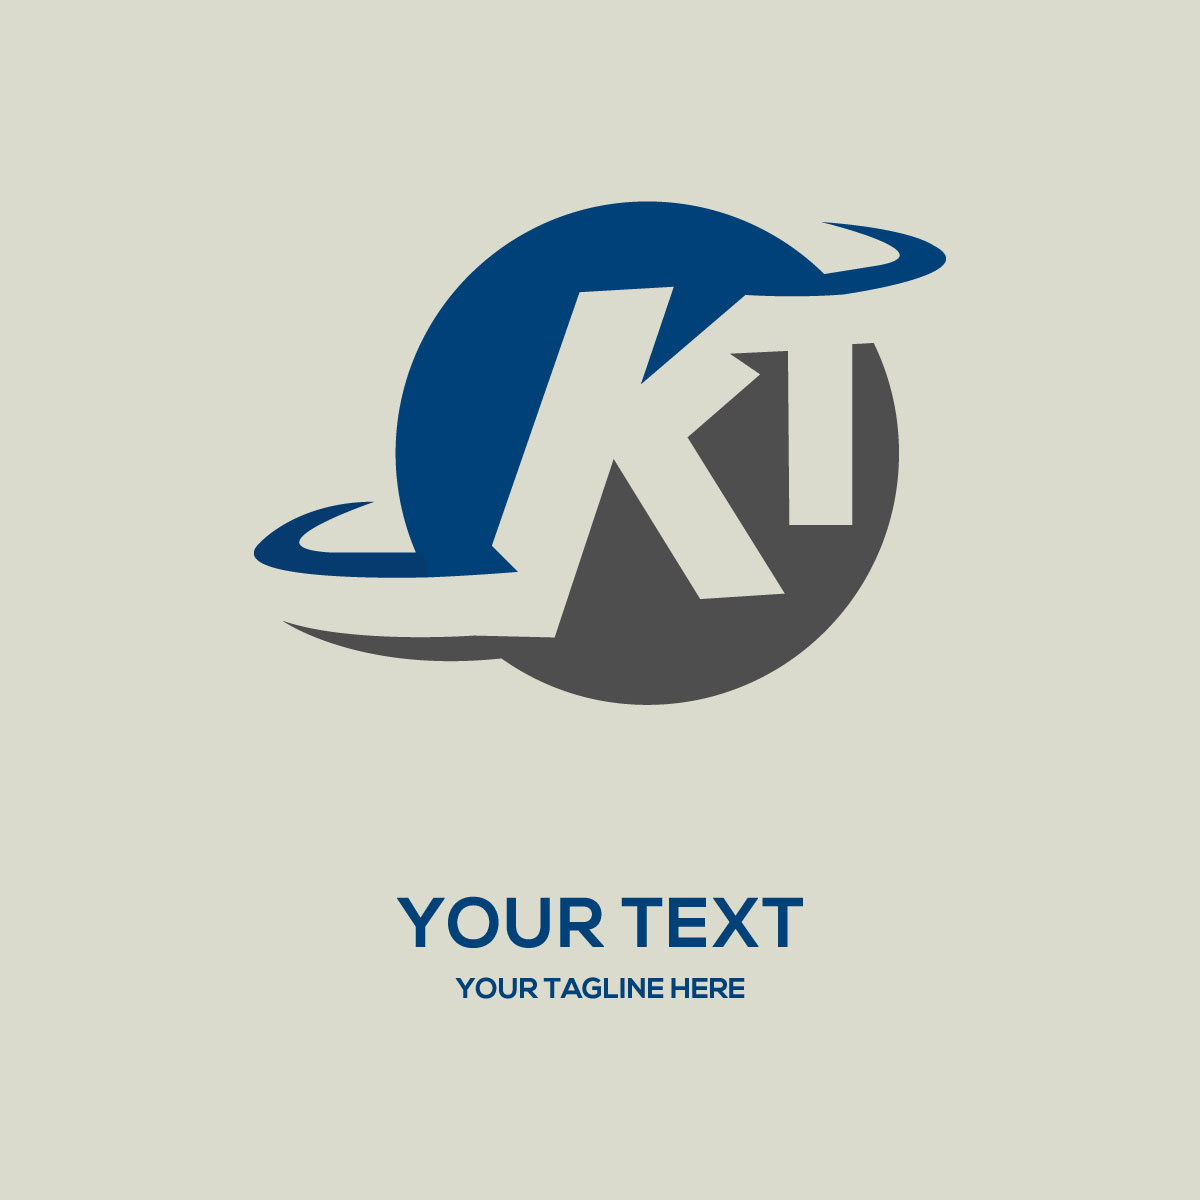 KT-logodesign